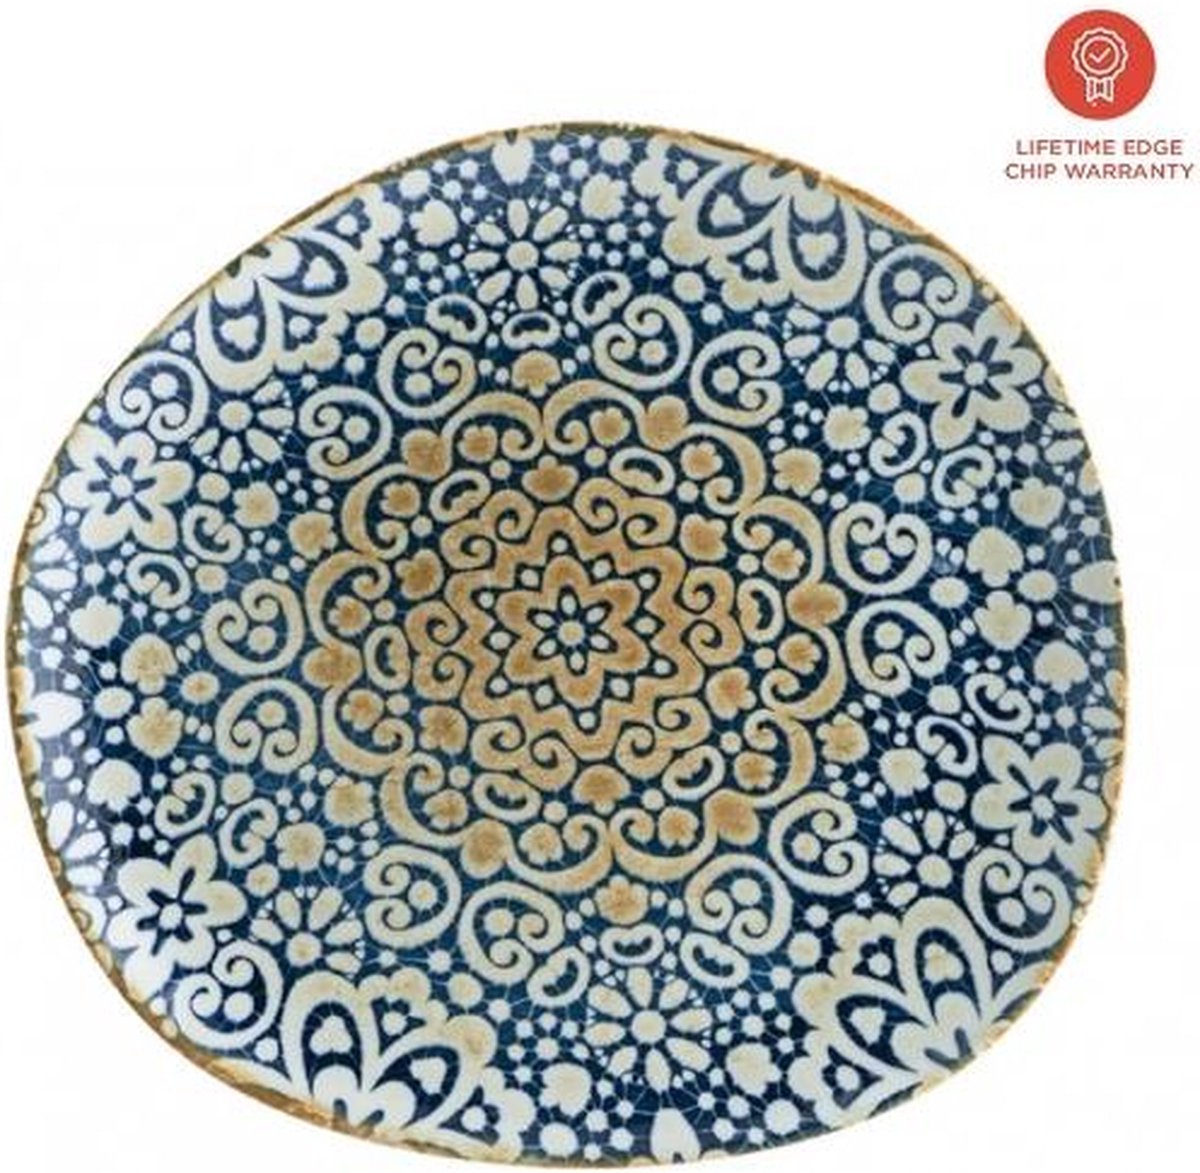 Bonna Dessertbord Alhambra 15x18 cm. Per stuk